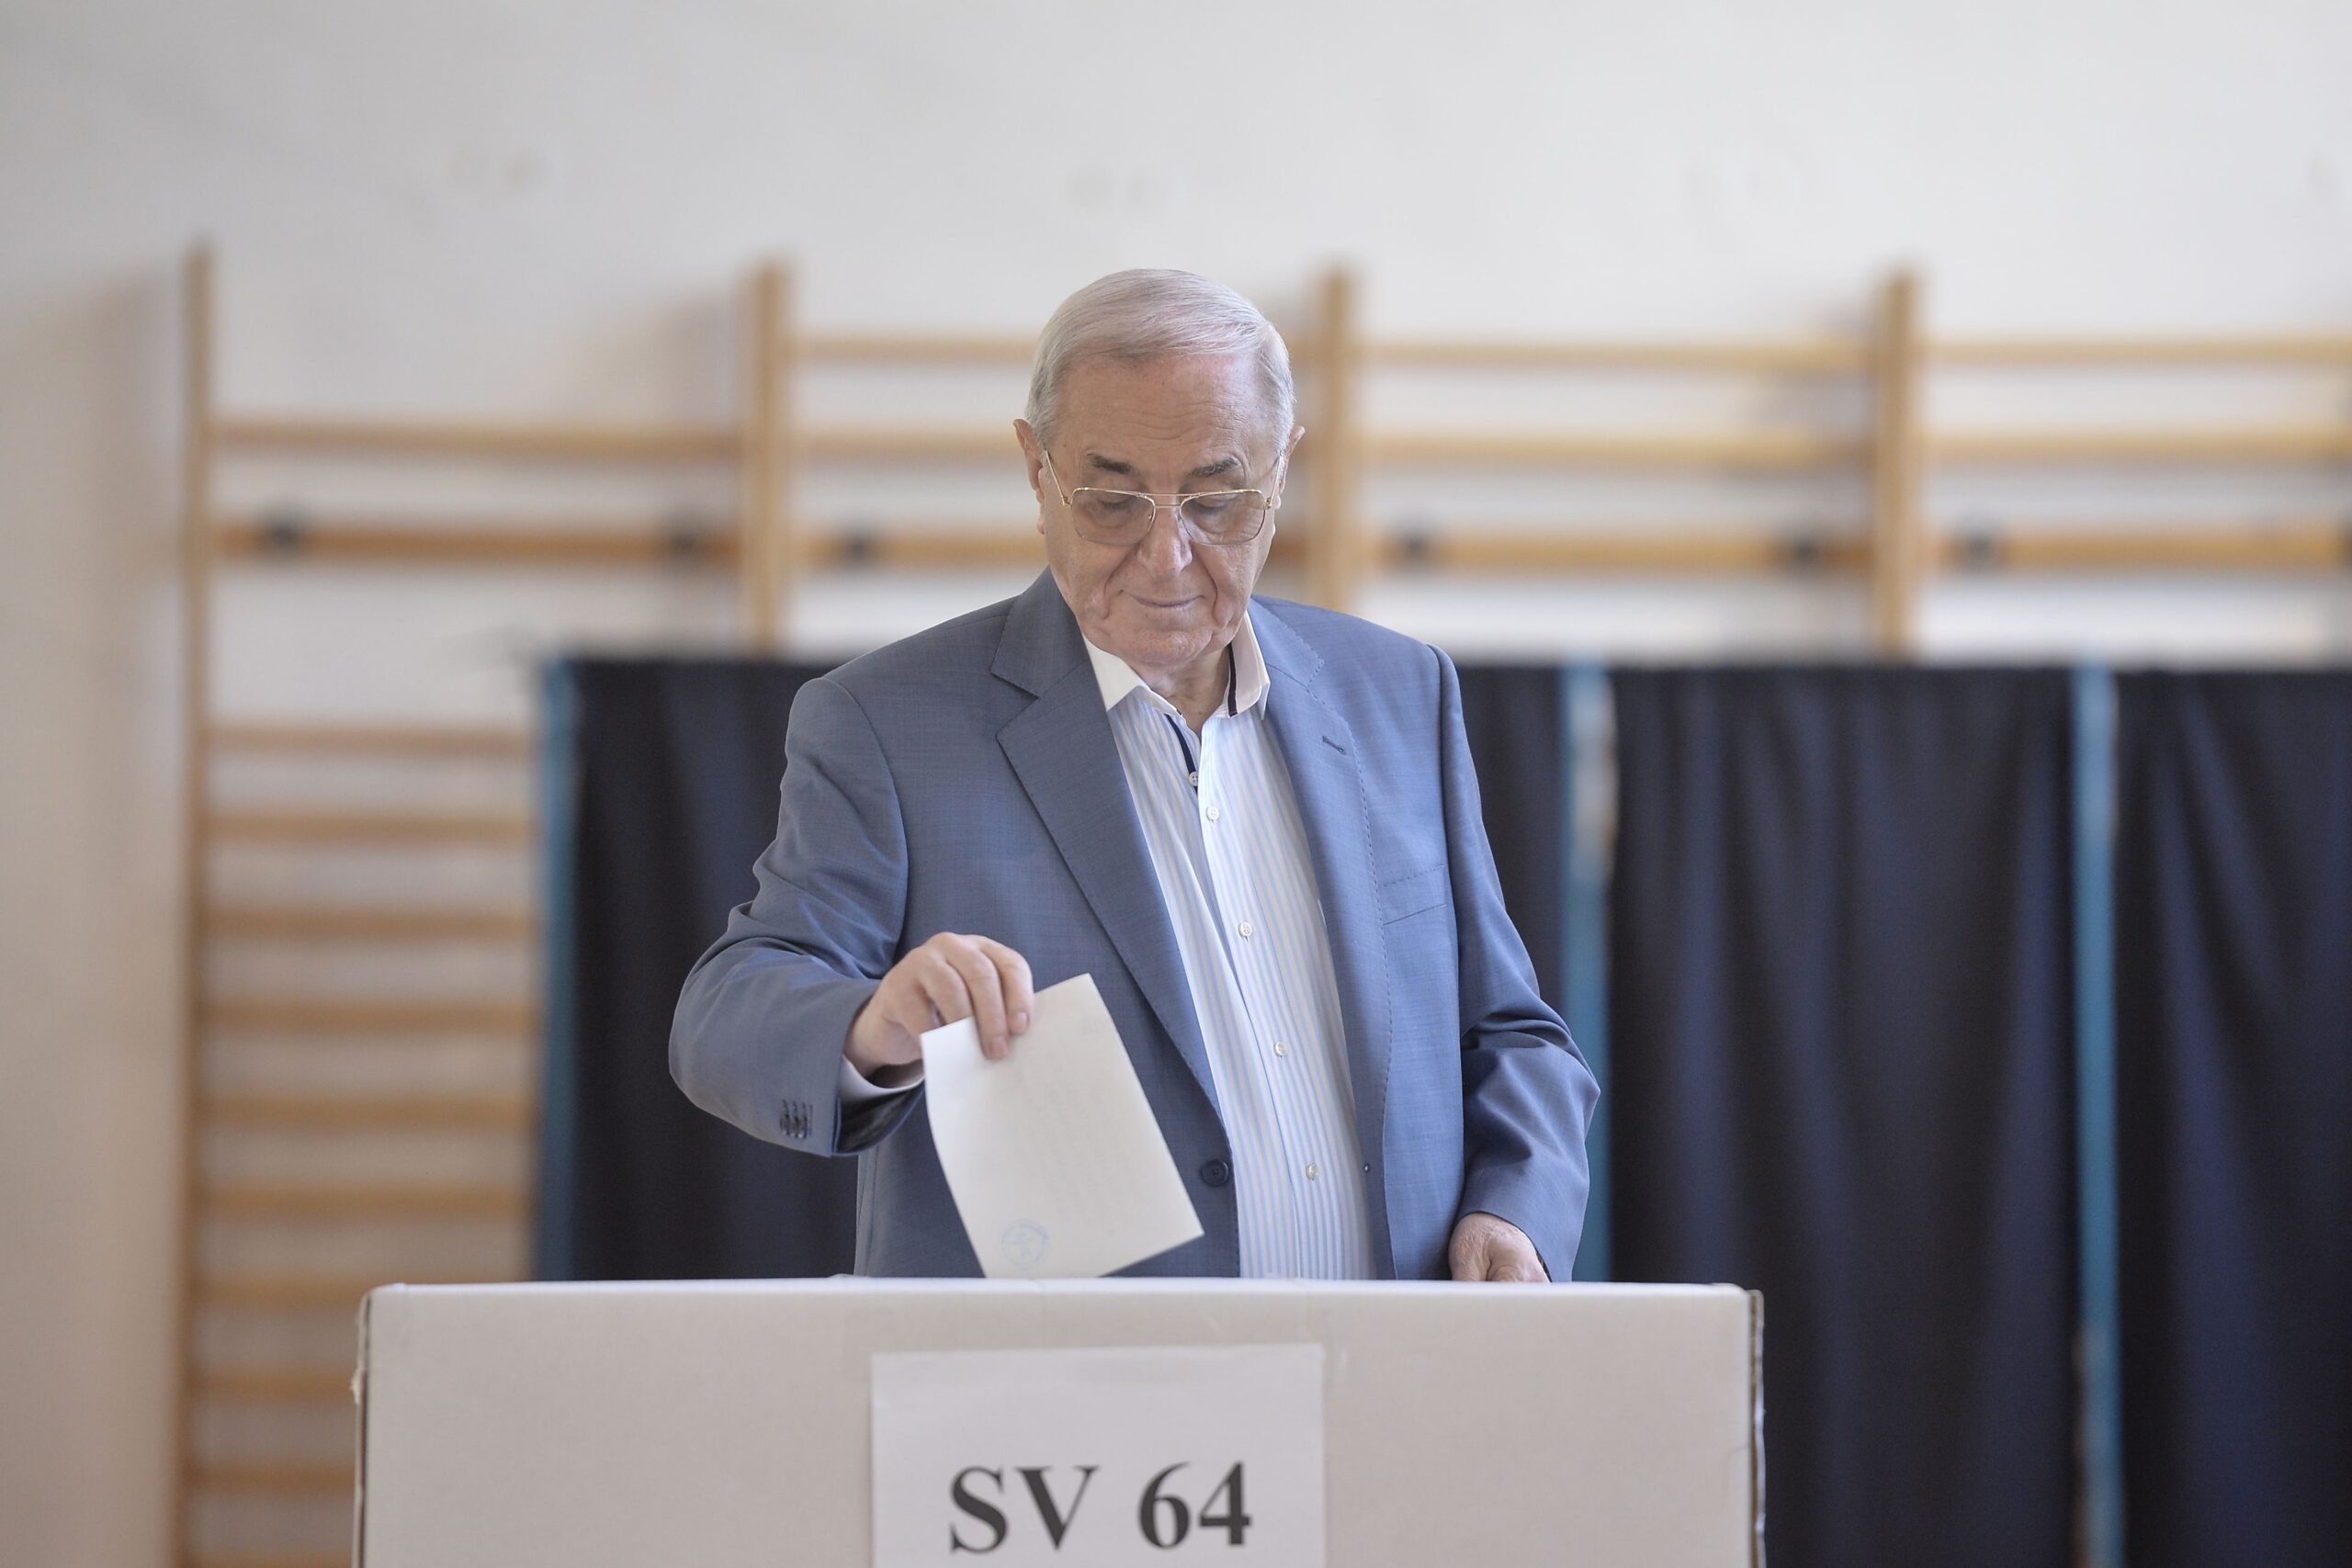 Viorel Paunescu voteaza la referendumul pentru redefiniriea familiei sambata, 6 octombrie 2018,  la sectia de votare nr. 64 din incinta Liceului Jean Monnet din Bucuresti. ANDREEA ALEXANDRU / MEDIAFAX FOTO